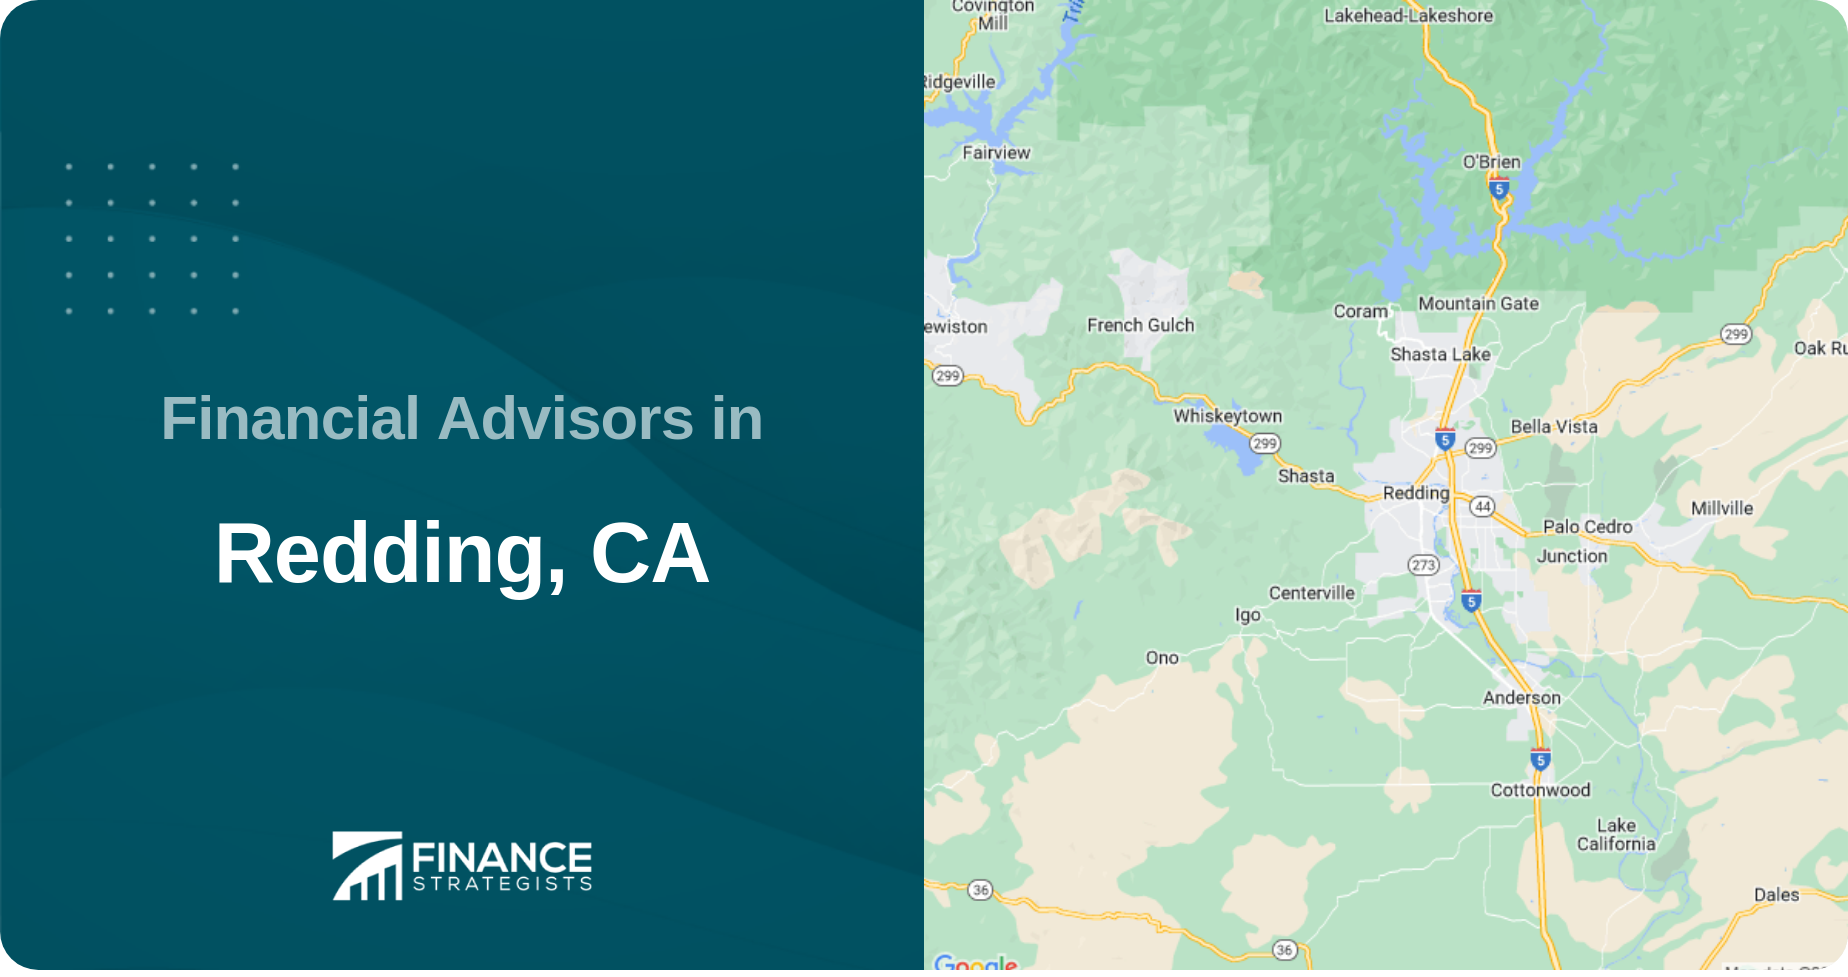 Financial Advisors in Redding, CA